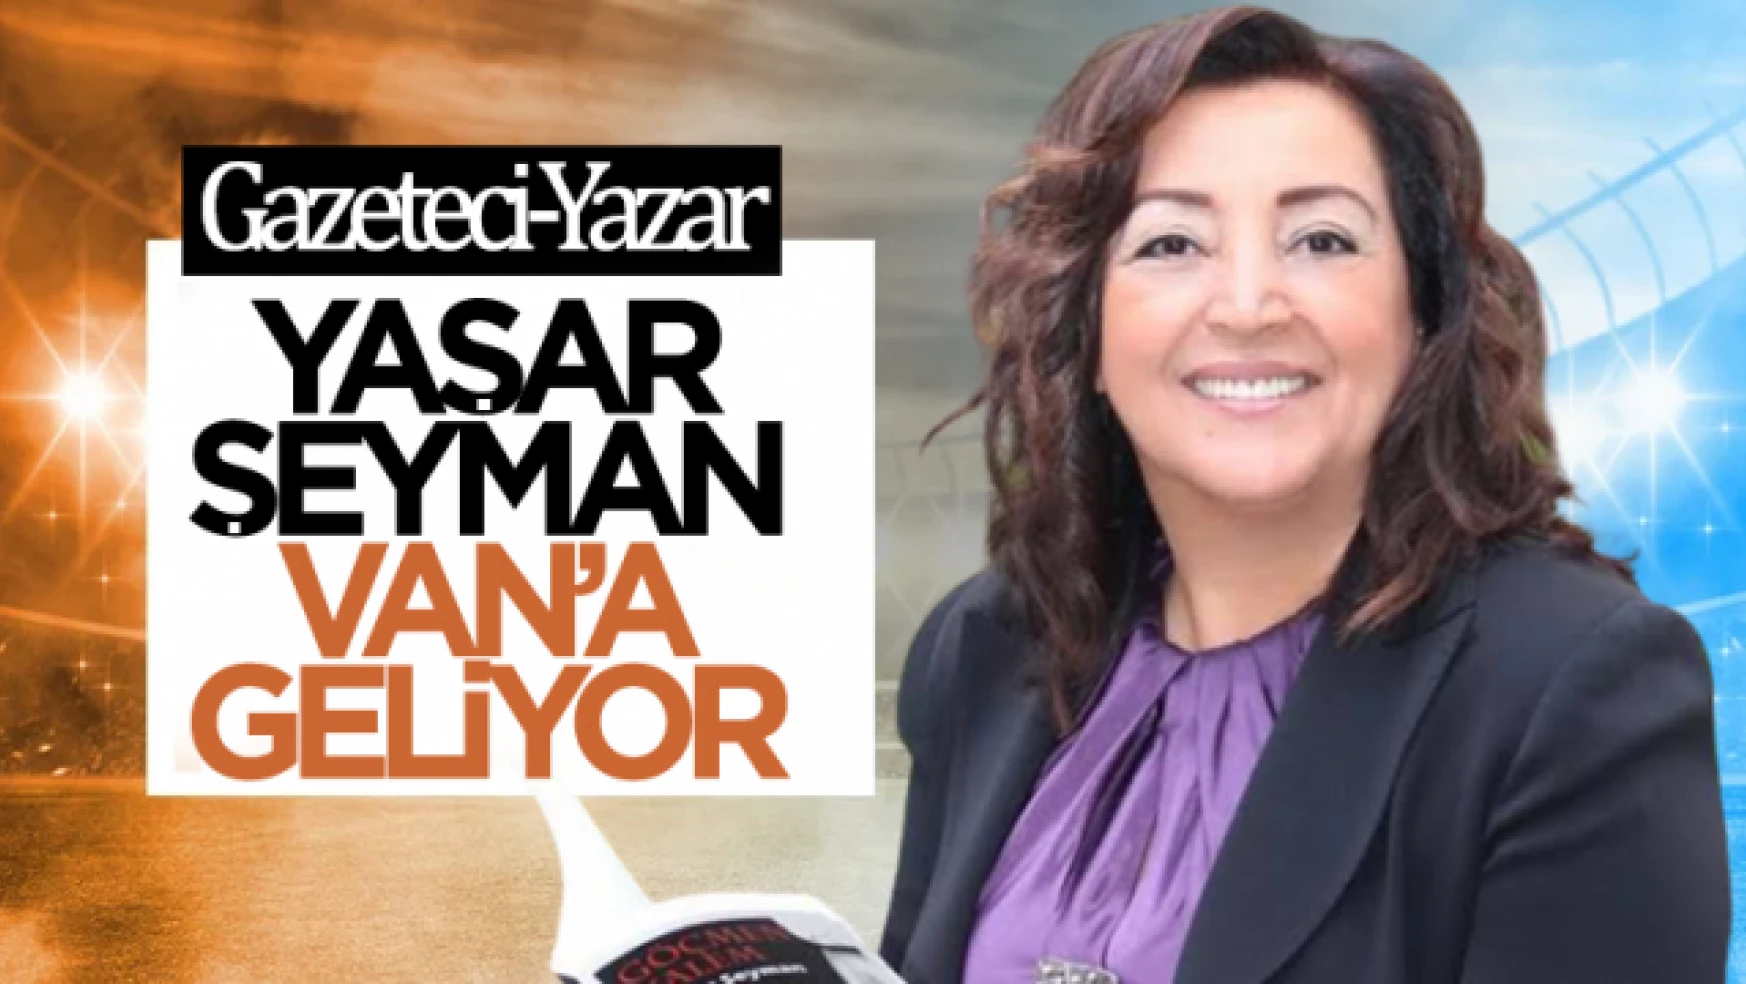 Gazeteci yazar Yaşar Seyman Van'a Geliyor